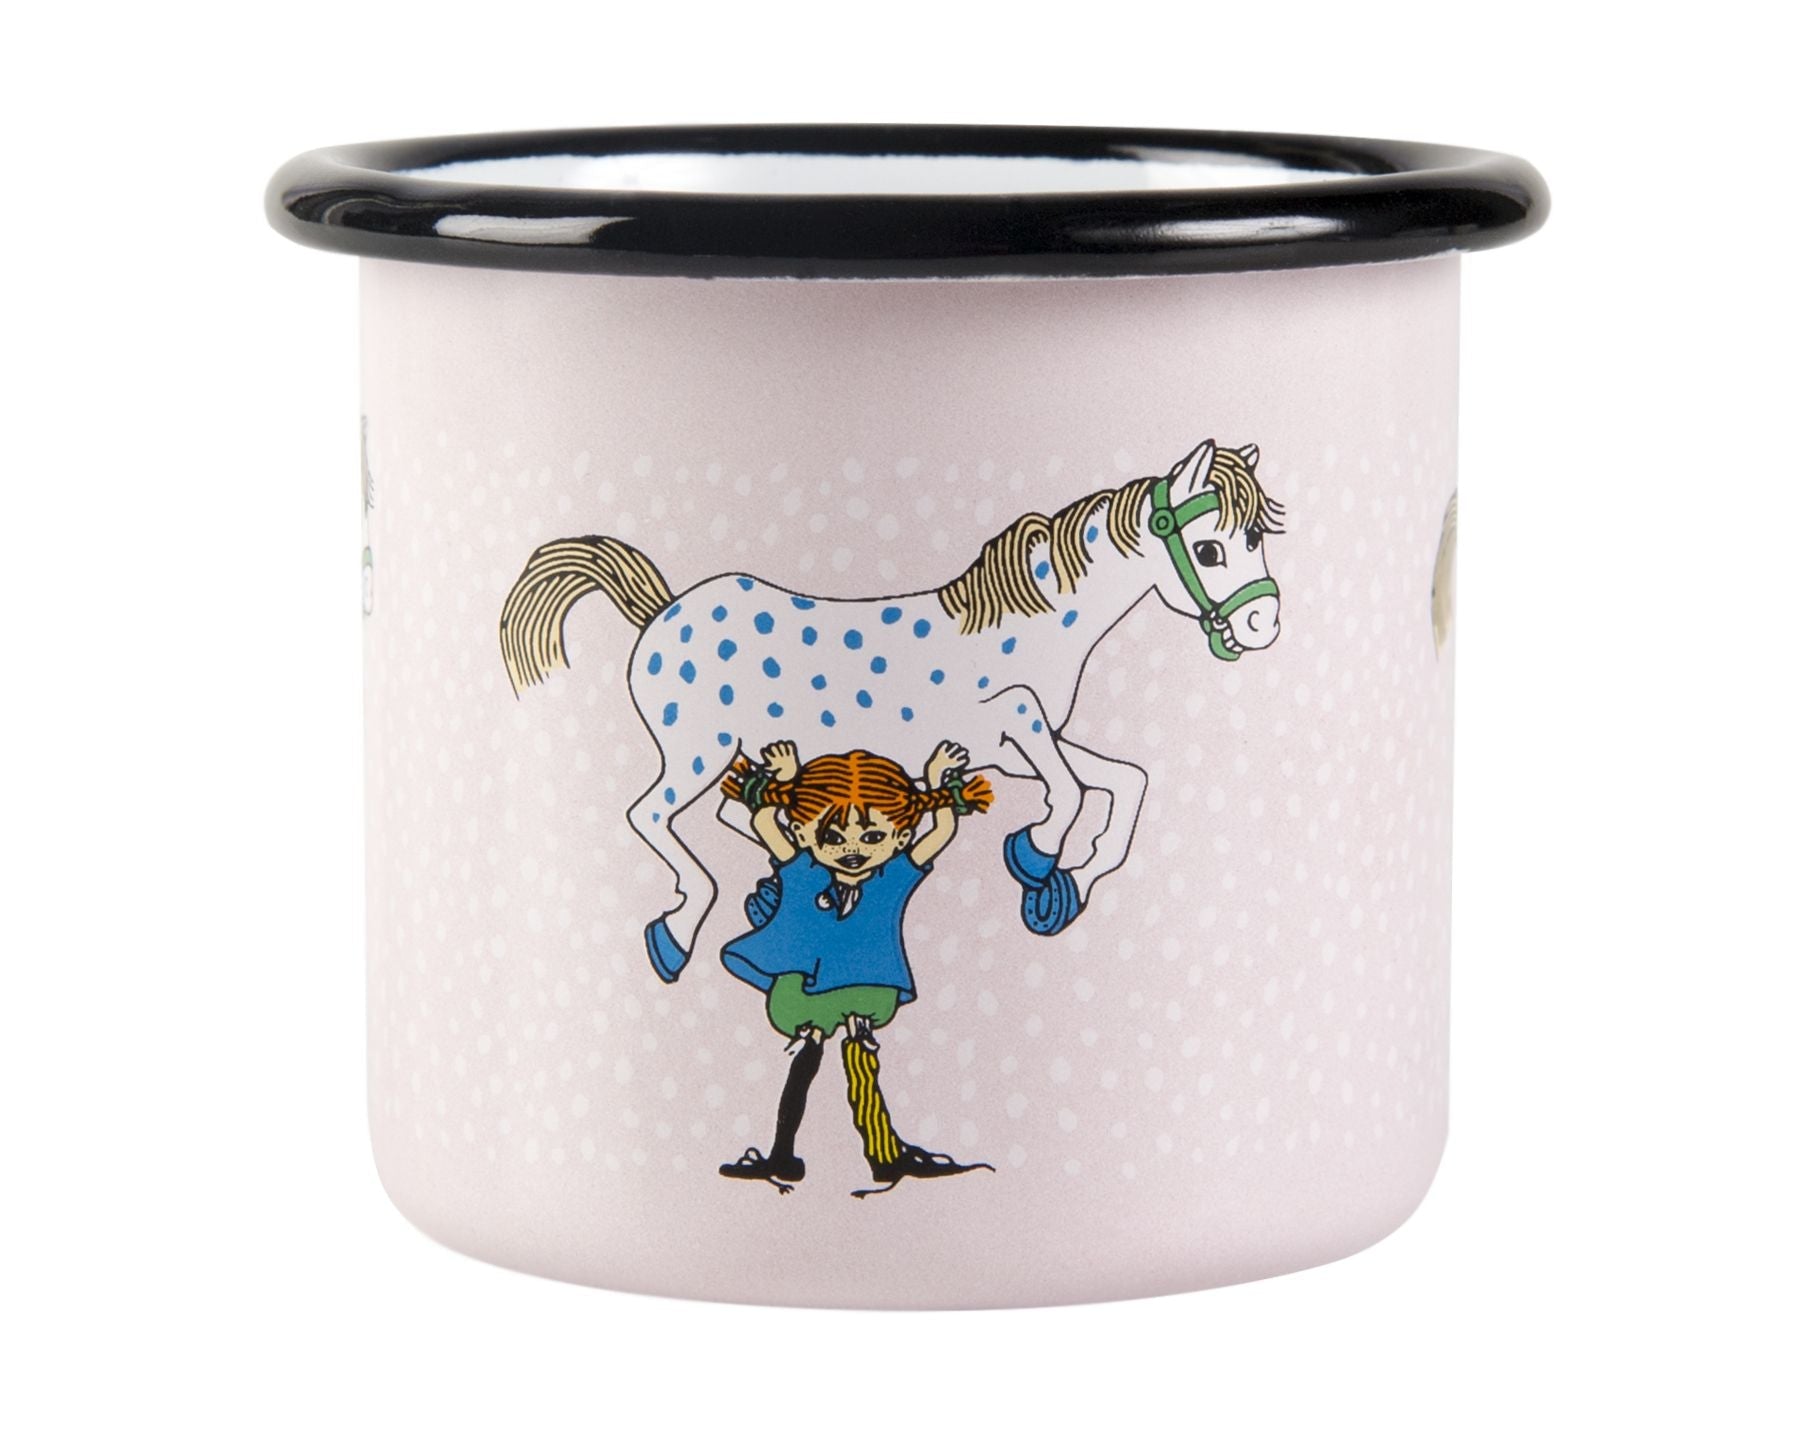 Muurla Pippi Longstocking Enamel Mug, Pippi And The Horse, Pink